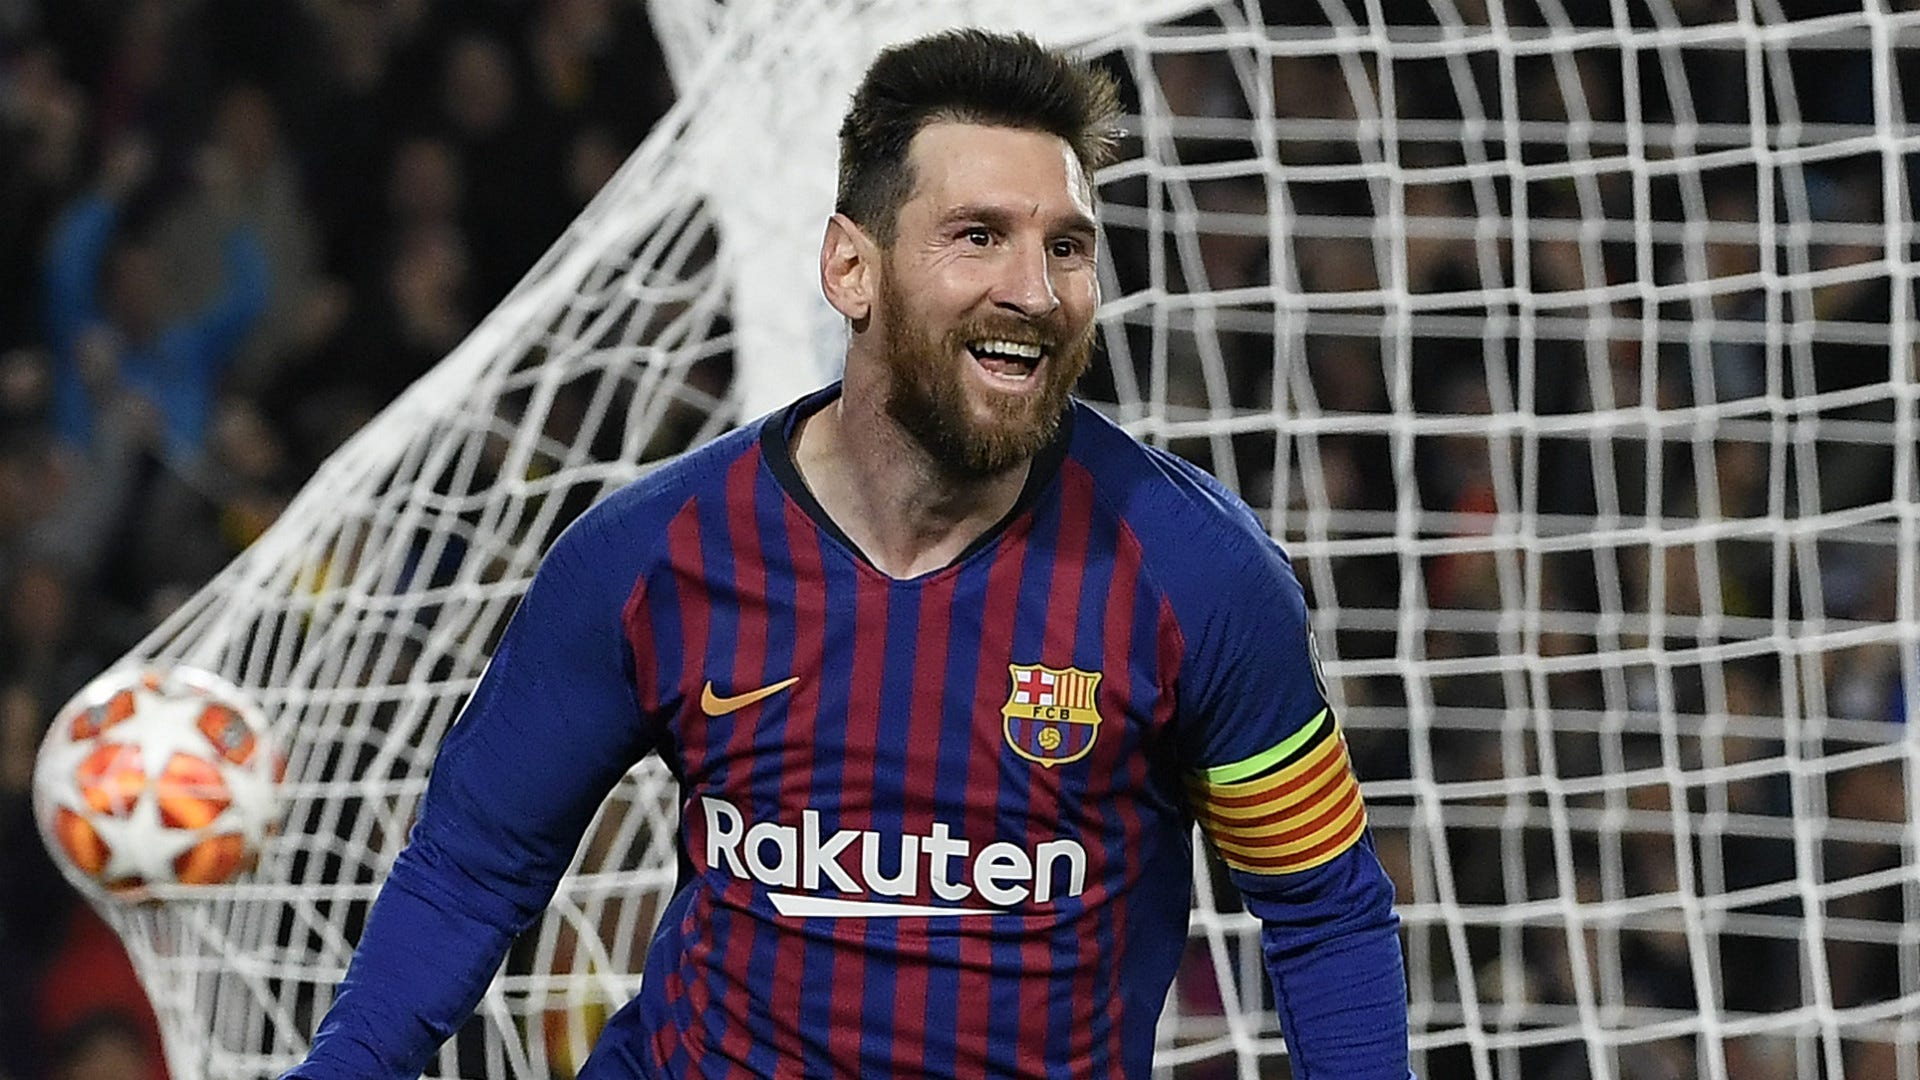 Messi đã ghi danh trong lịch sử Champions League. Cùng xem lại những khoảnh khắc đặc biệt mà anh đã mang lại cho đội bóng của mình.